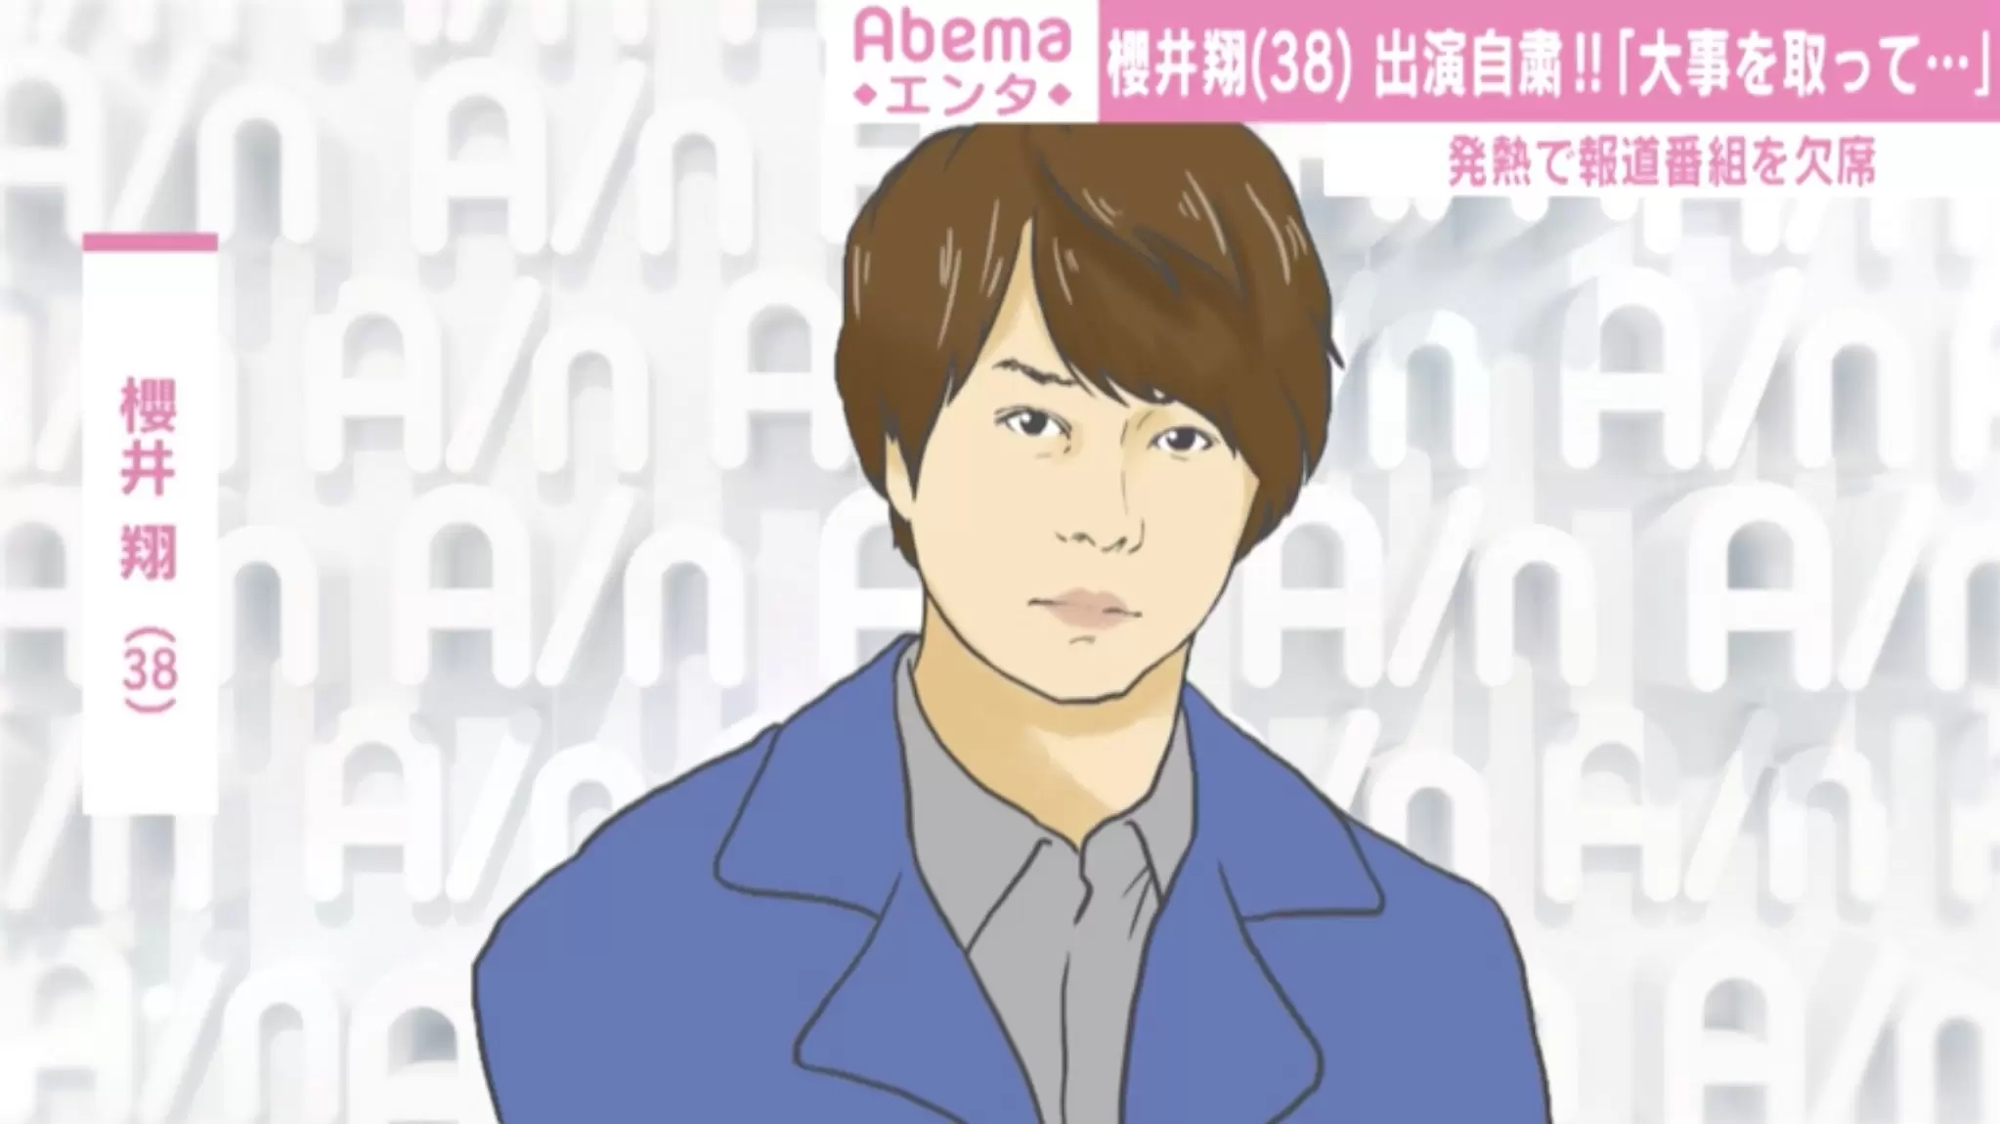 櫻井翔、『news zero』出演自粛で呼びかけ「少しでも体調に変化を感じたら迷わず休んで」 - ABEMA TIMES